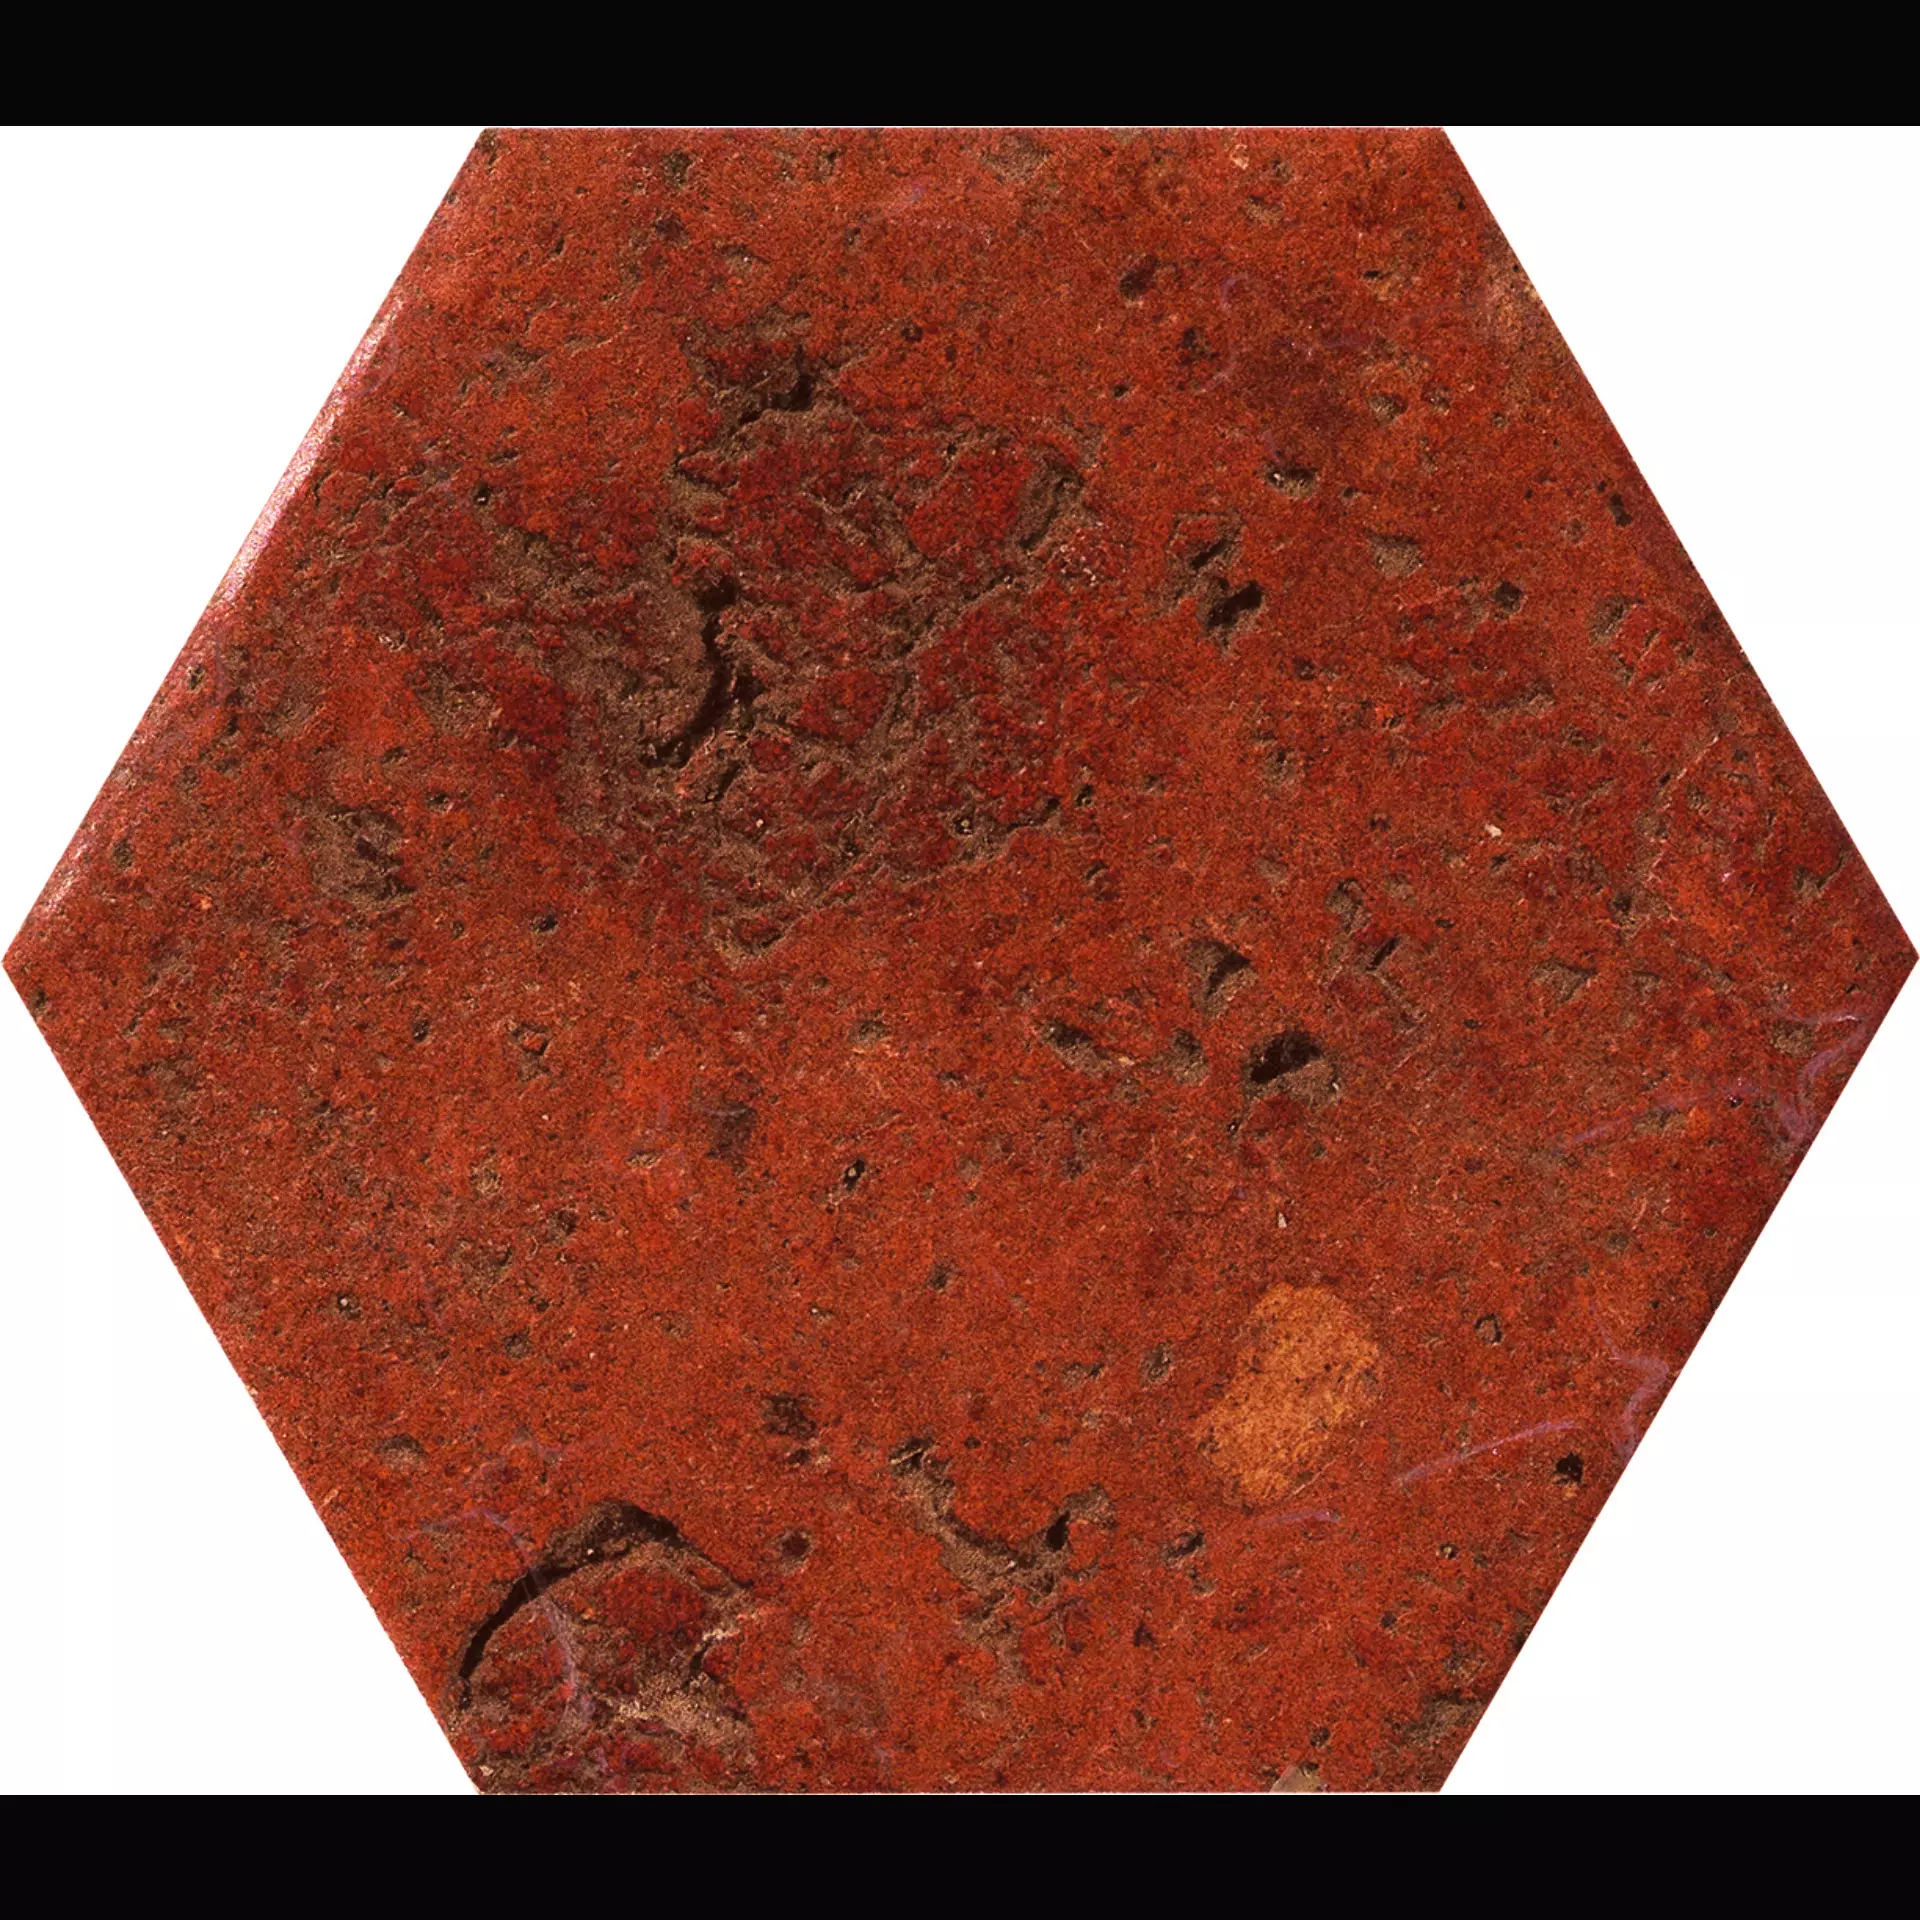 CIR Cotto Del Campiano Rosso Siena Naturale Hexagon 1080615 15,8x18,3cm 10mm